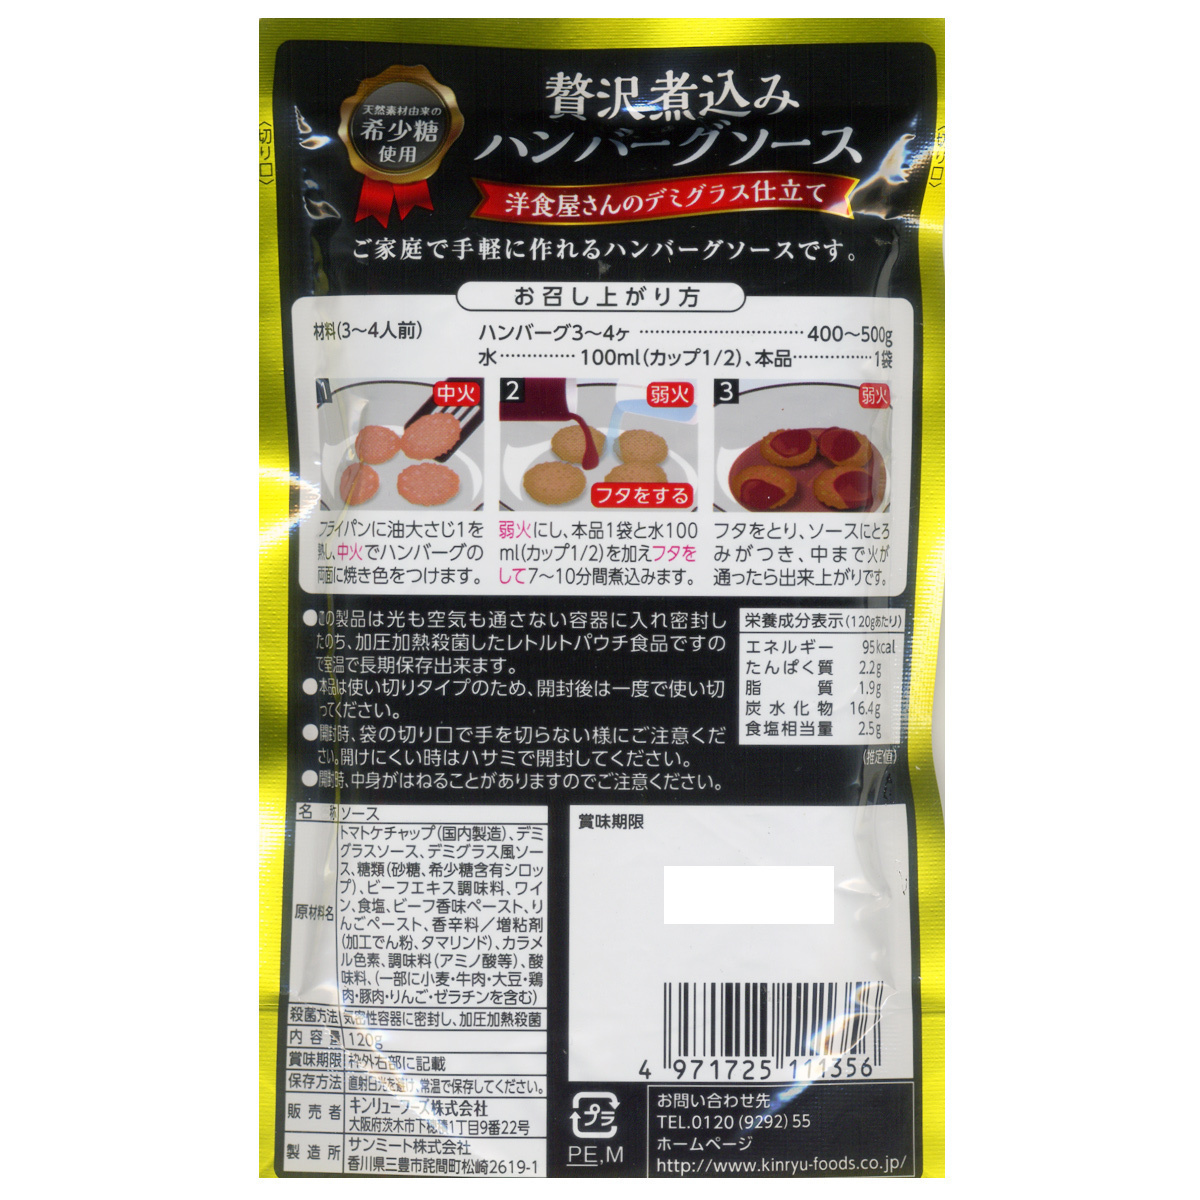  включение в покупку возможность роскошь nikomi гамбургер соус разбавление модель редкий сахар использование gold дракон f-z120gx2 пакет комплект /.